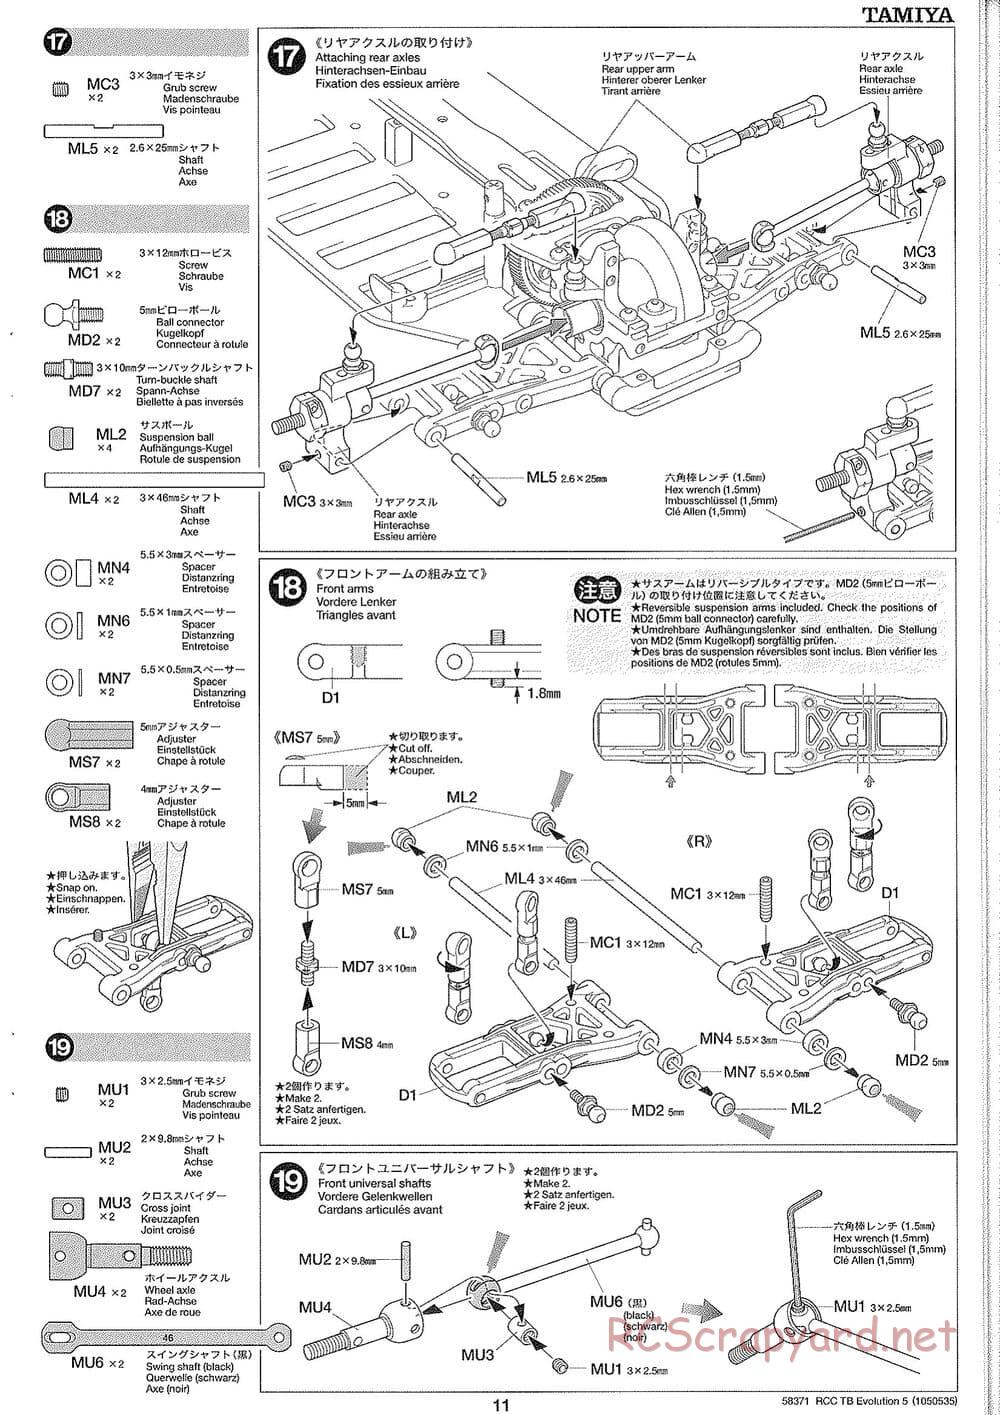 Tamiya - TB Evolution V Chassis - Manual - Page 11